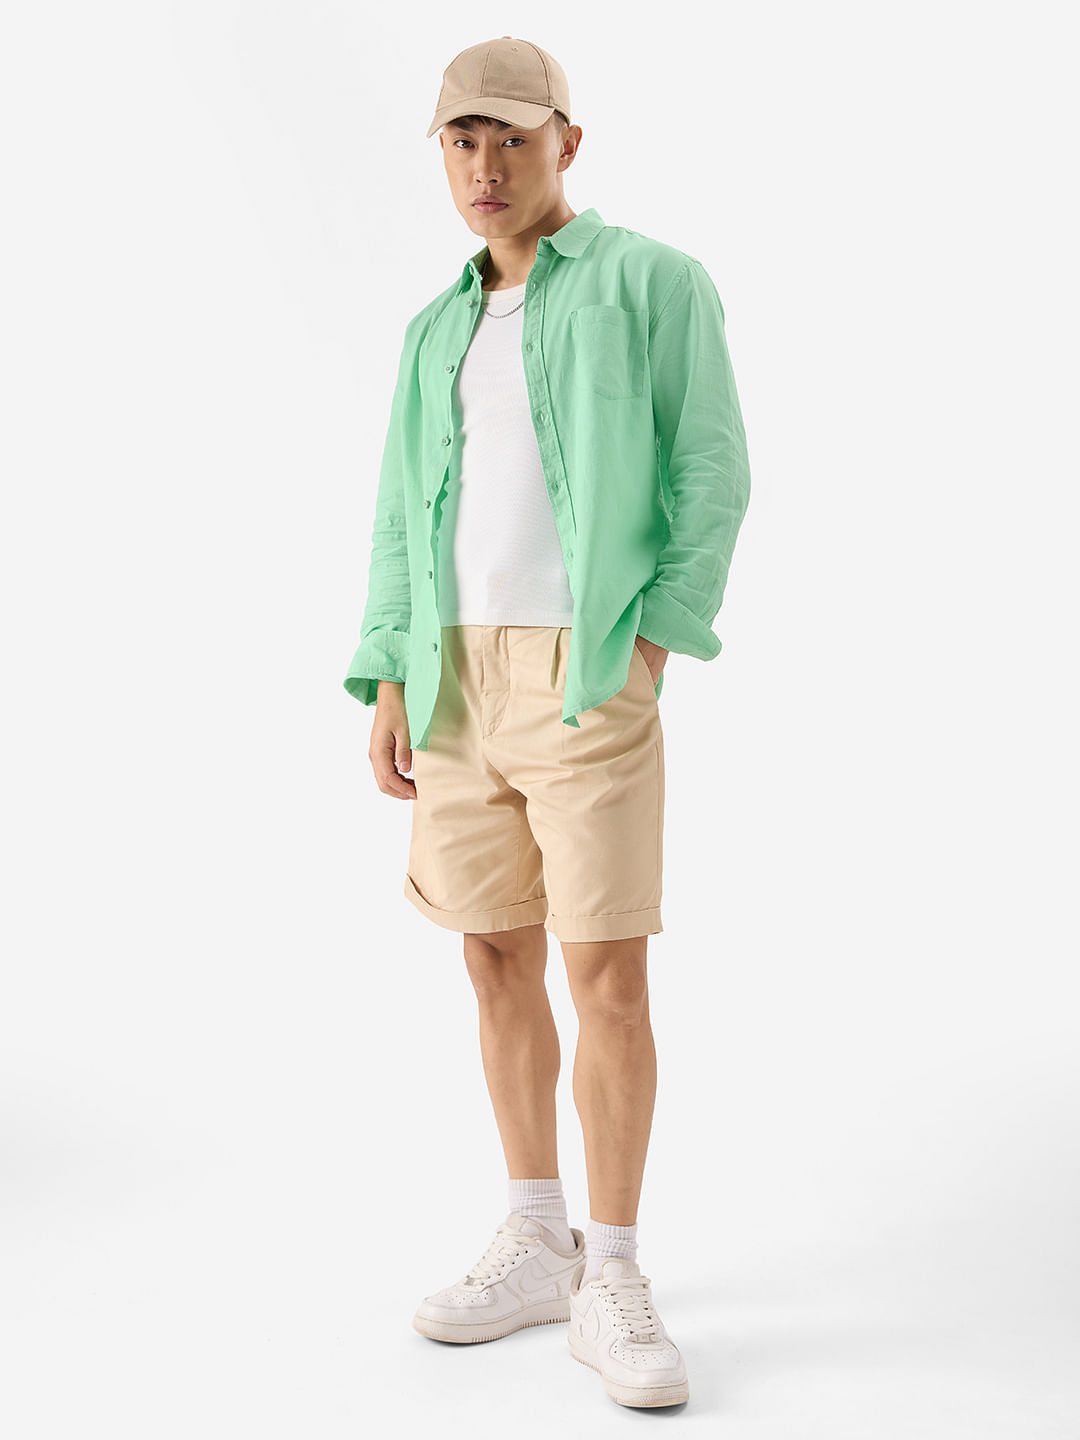 Buy Solids: Green Men's Shirt Online